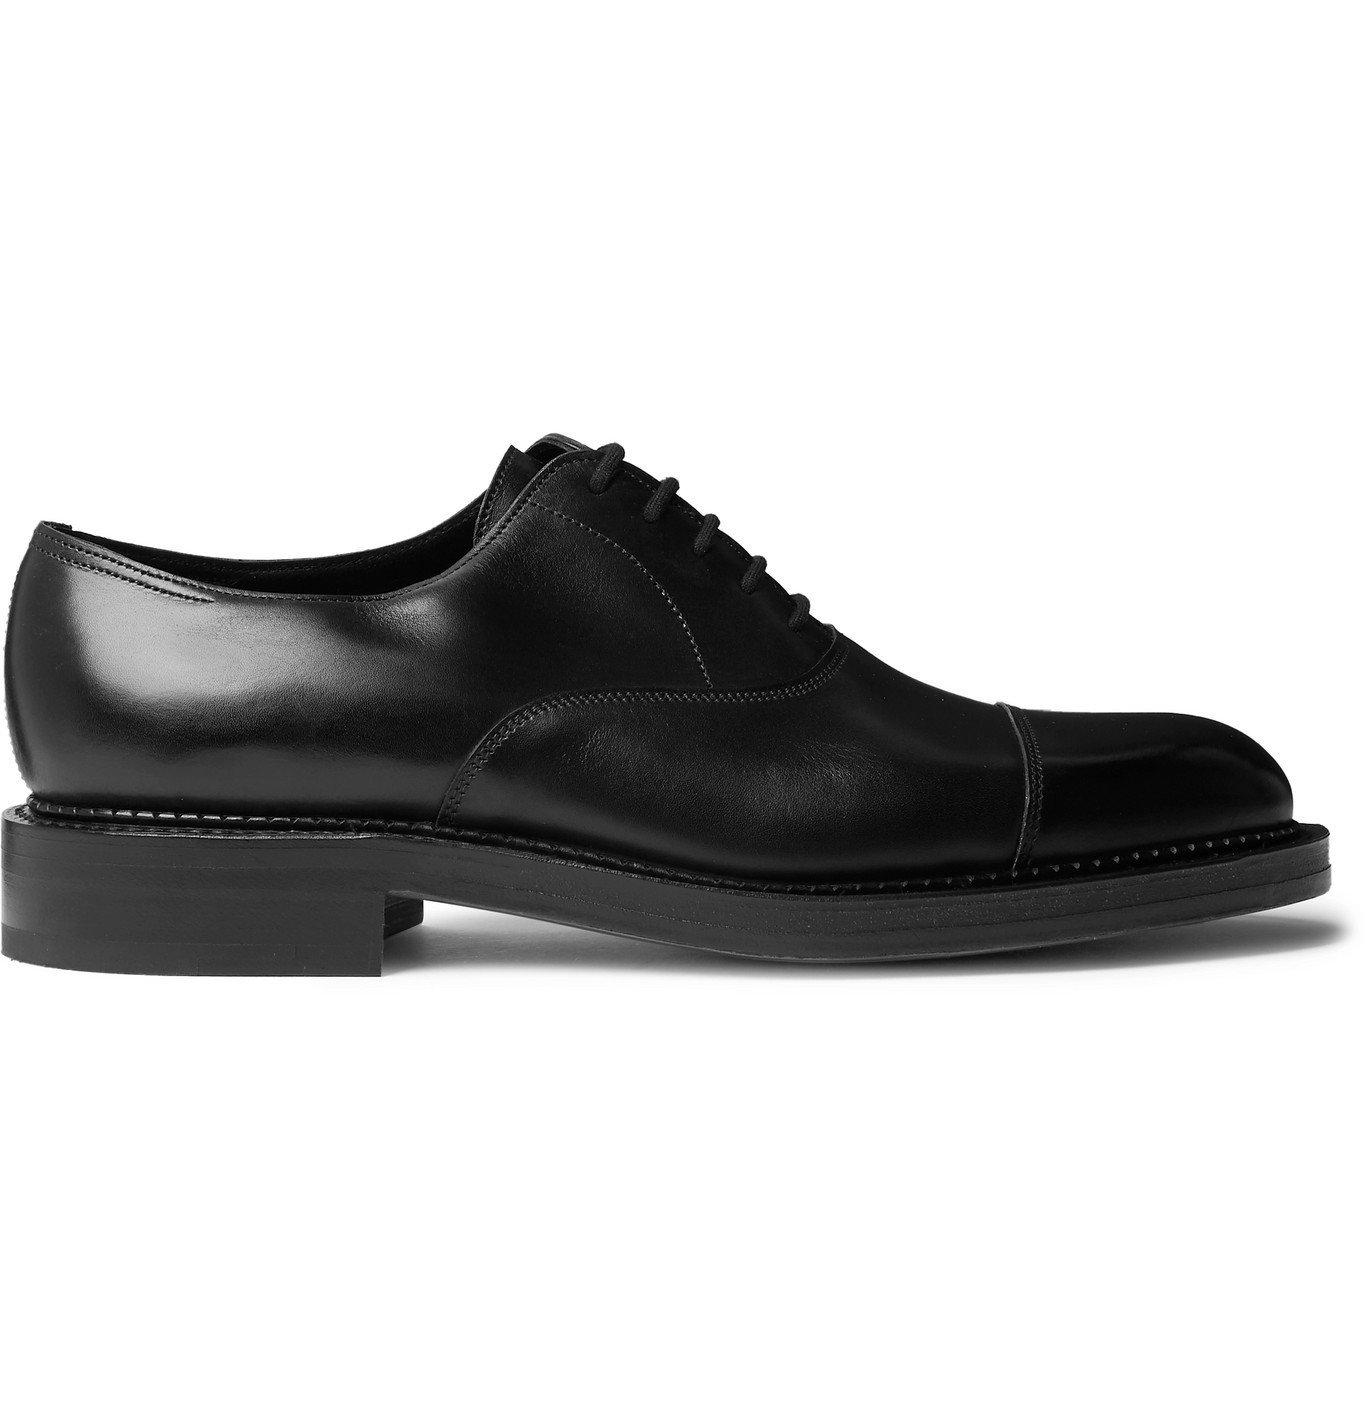 John Lobb - City II Leather Oxford Shoes - Black John Lobb